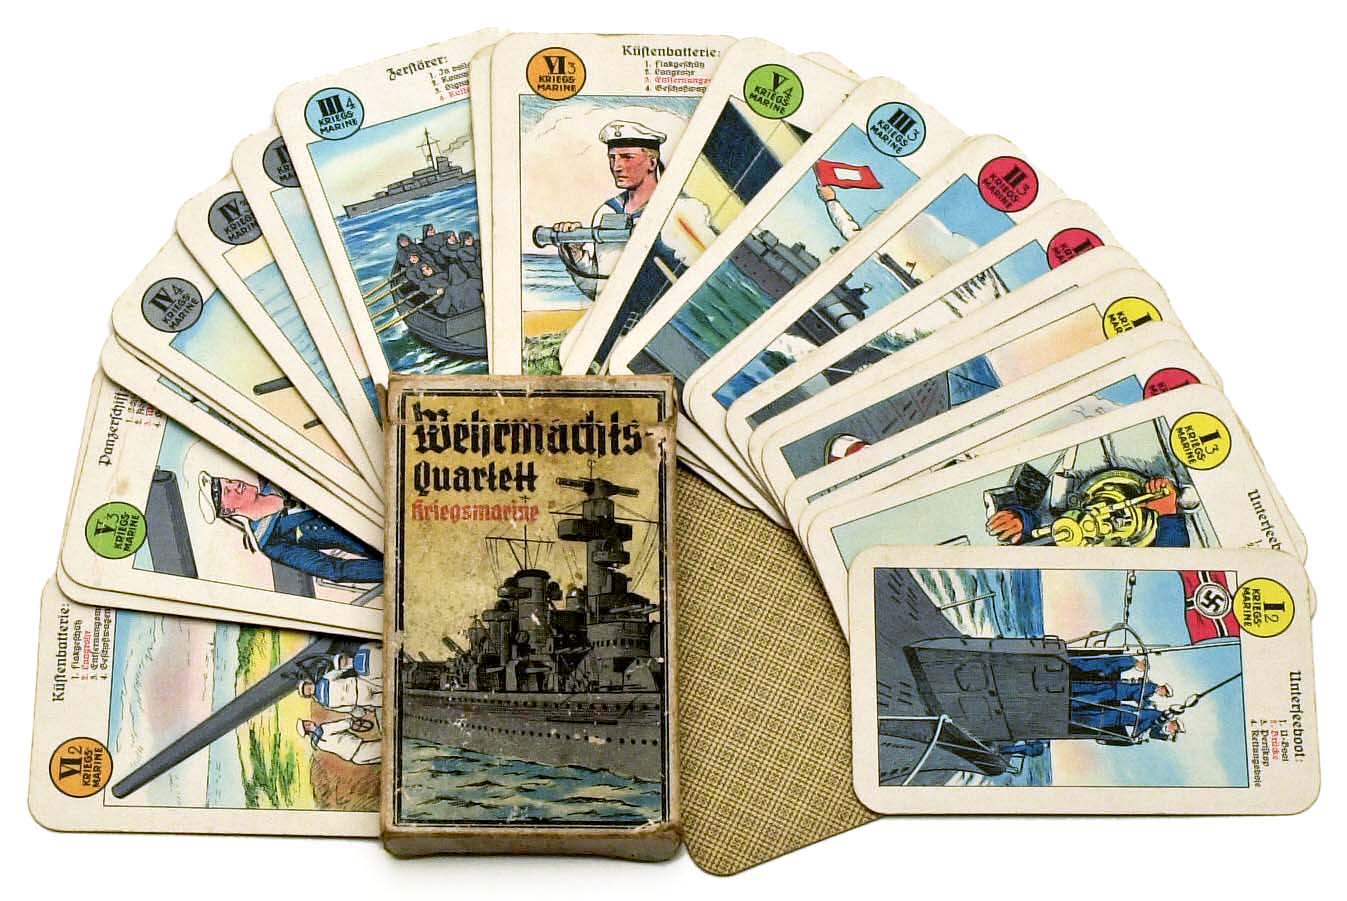 Wehrmachts Quartett – Kriegsmarine (1937)